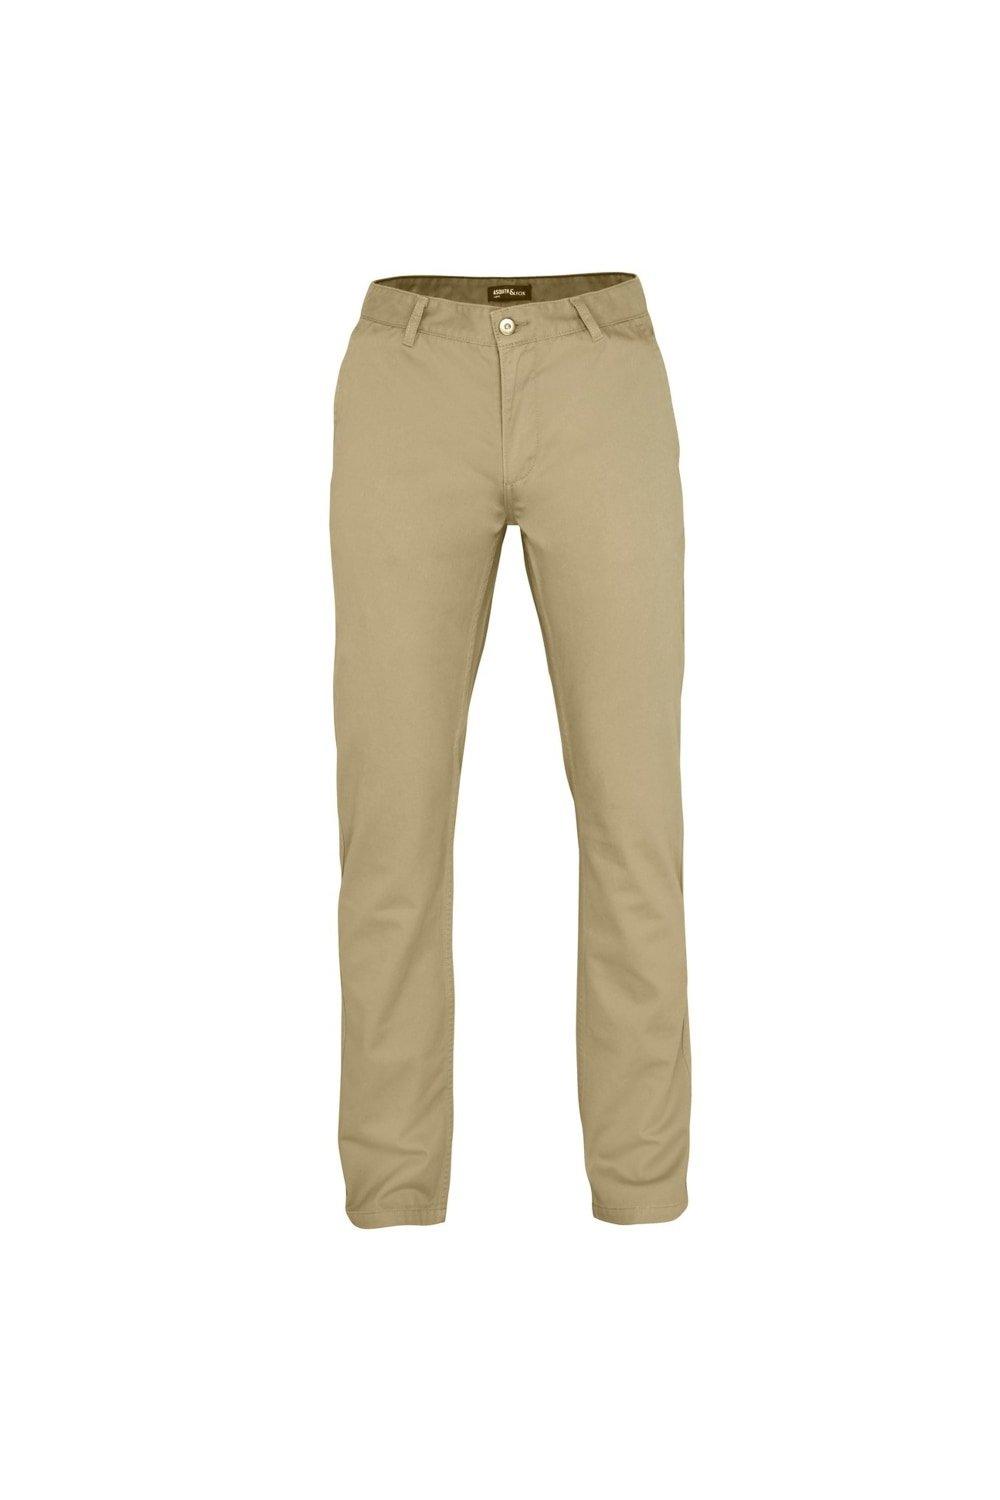 Классические повседневные брюки чинос/брюки Asquith & Fox, обнаженная цена и фото